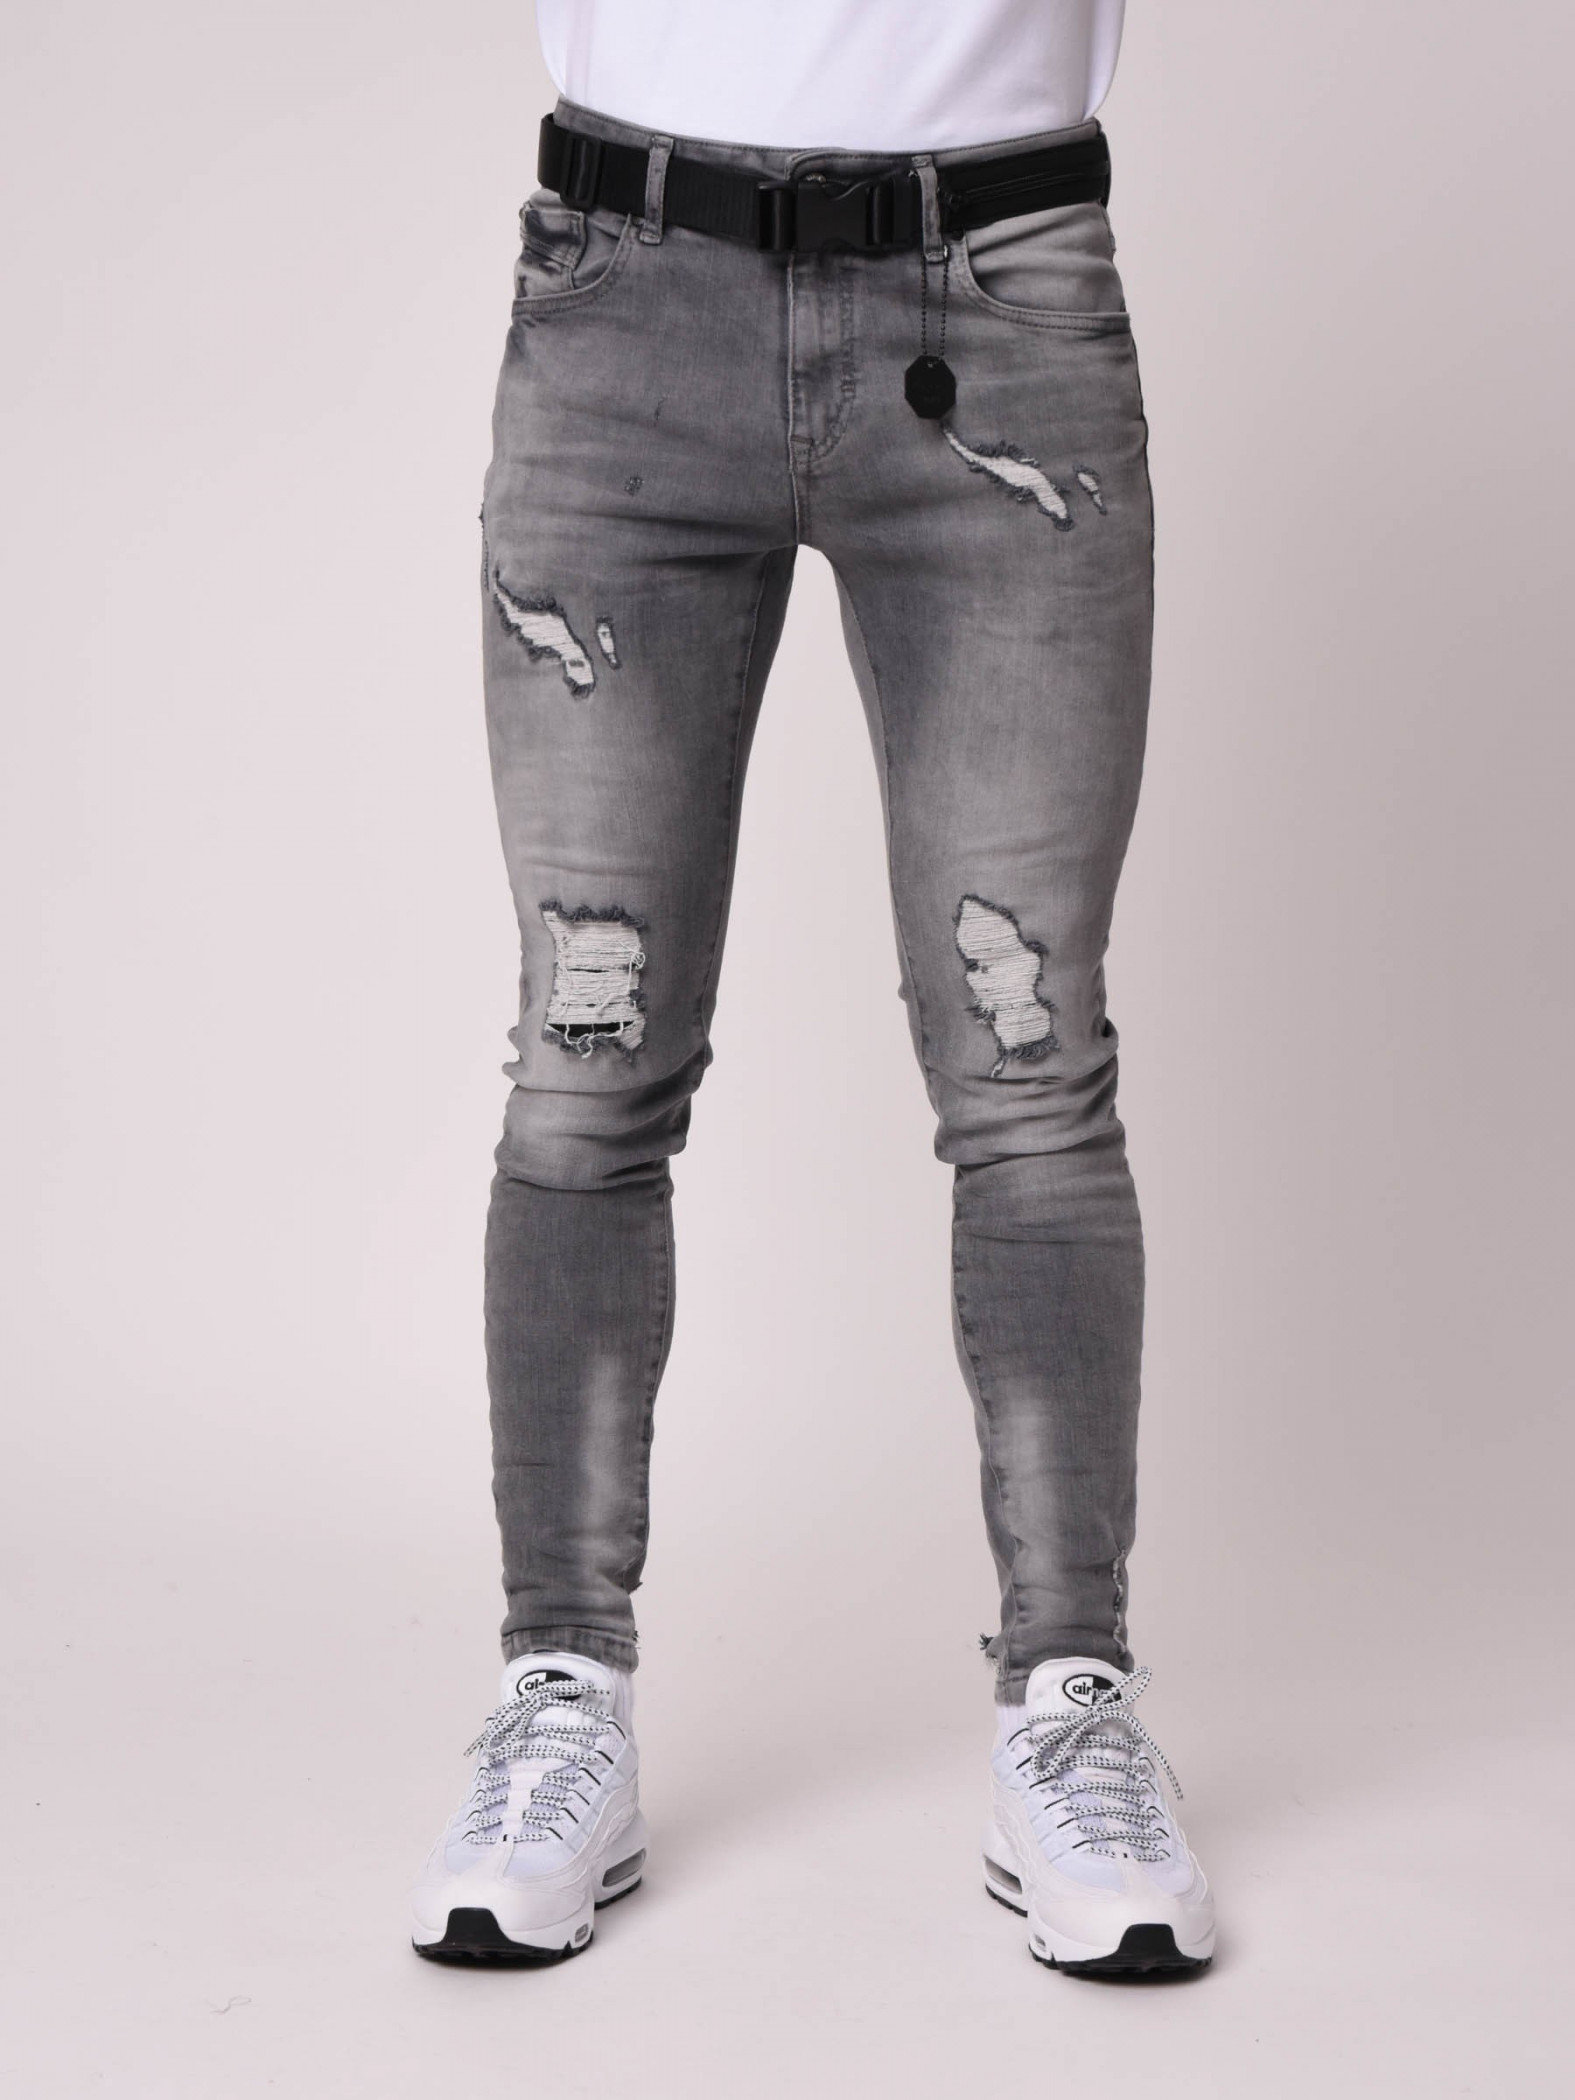 DML homme slim skinny jeans gris enduit Casual Denim Classic Pantalon